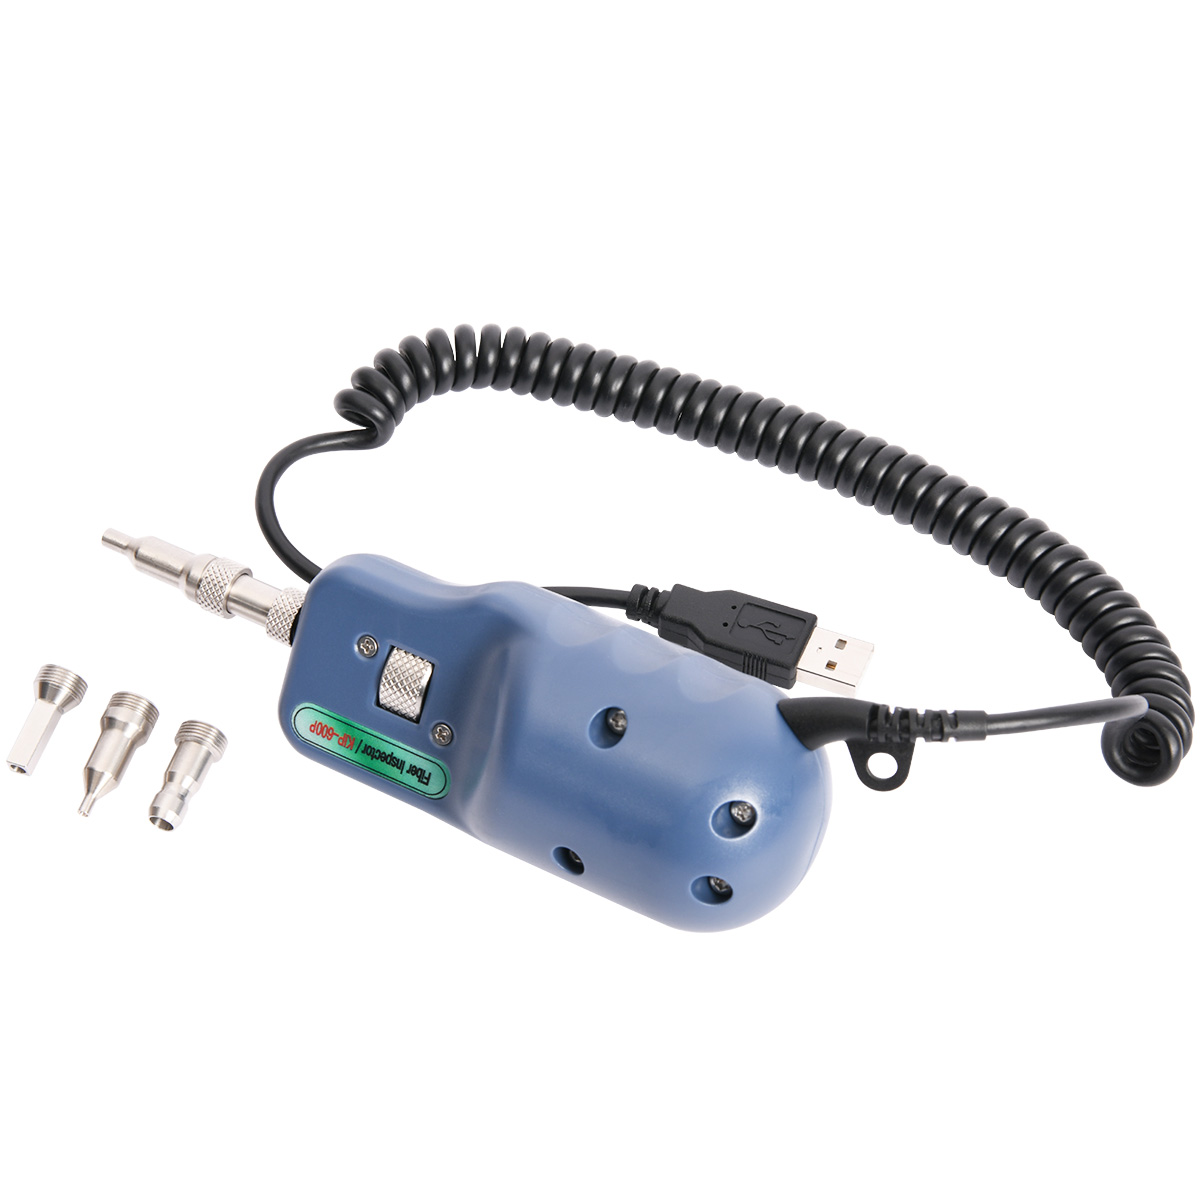 Sonde d'inspection fibre optique : FIP-400B